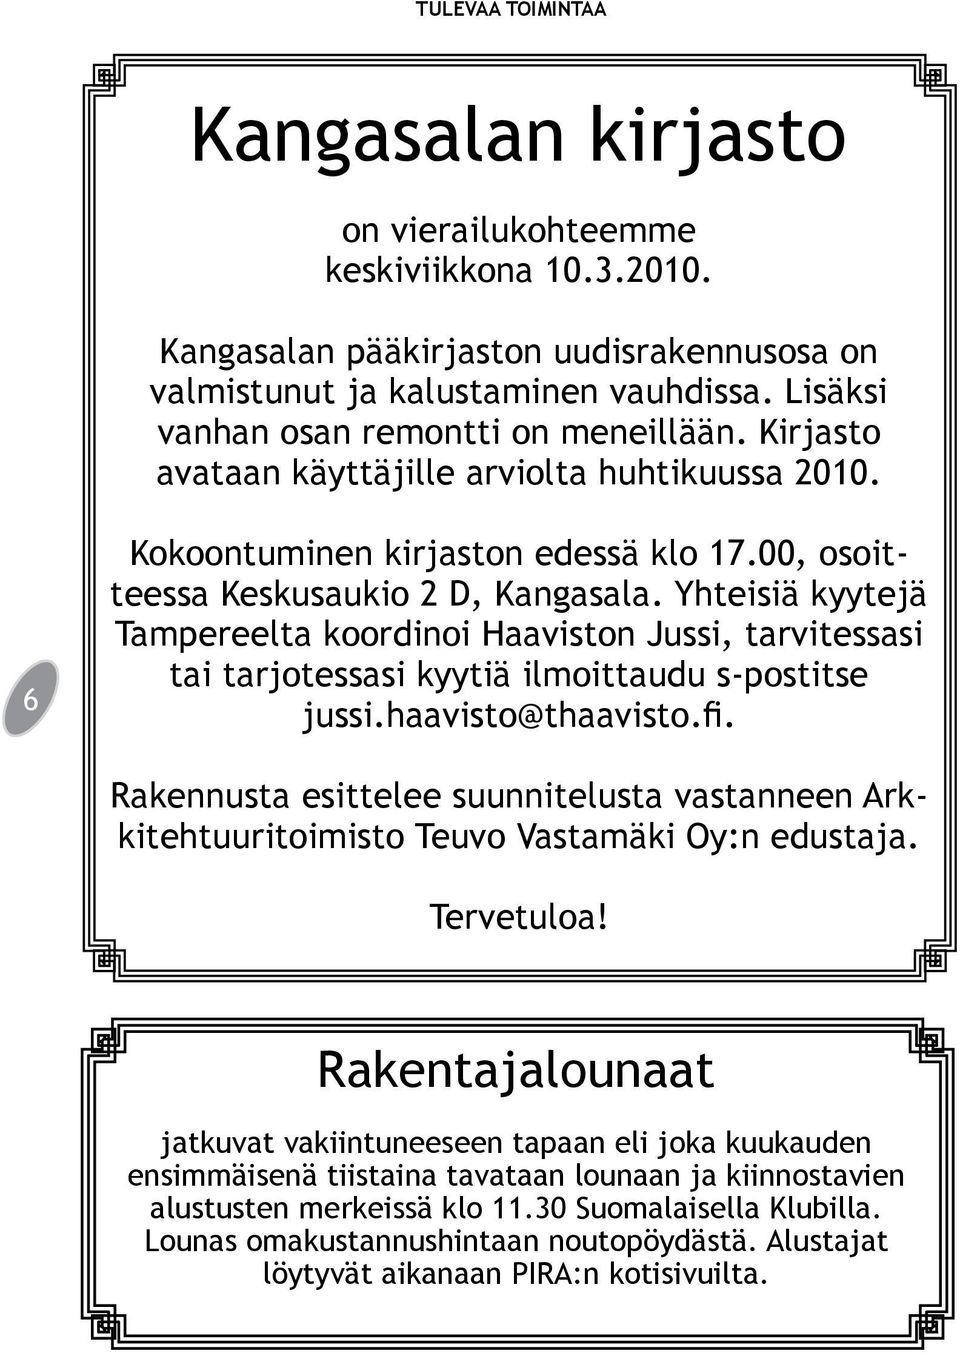 Yhteisiä kyytejä Tampereelta koordinoi Haaviston Jussi, tarvitessasi tai tarjotessasi kyytiä ilmoittaudu s-postitse jussi.haavisto@thaavisto.fi.